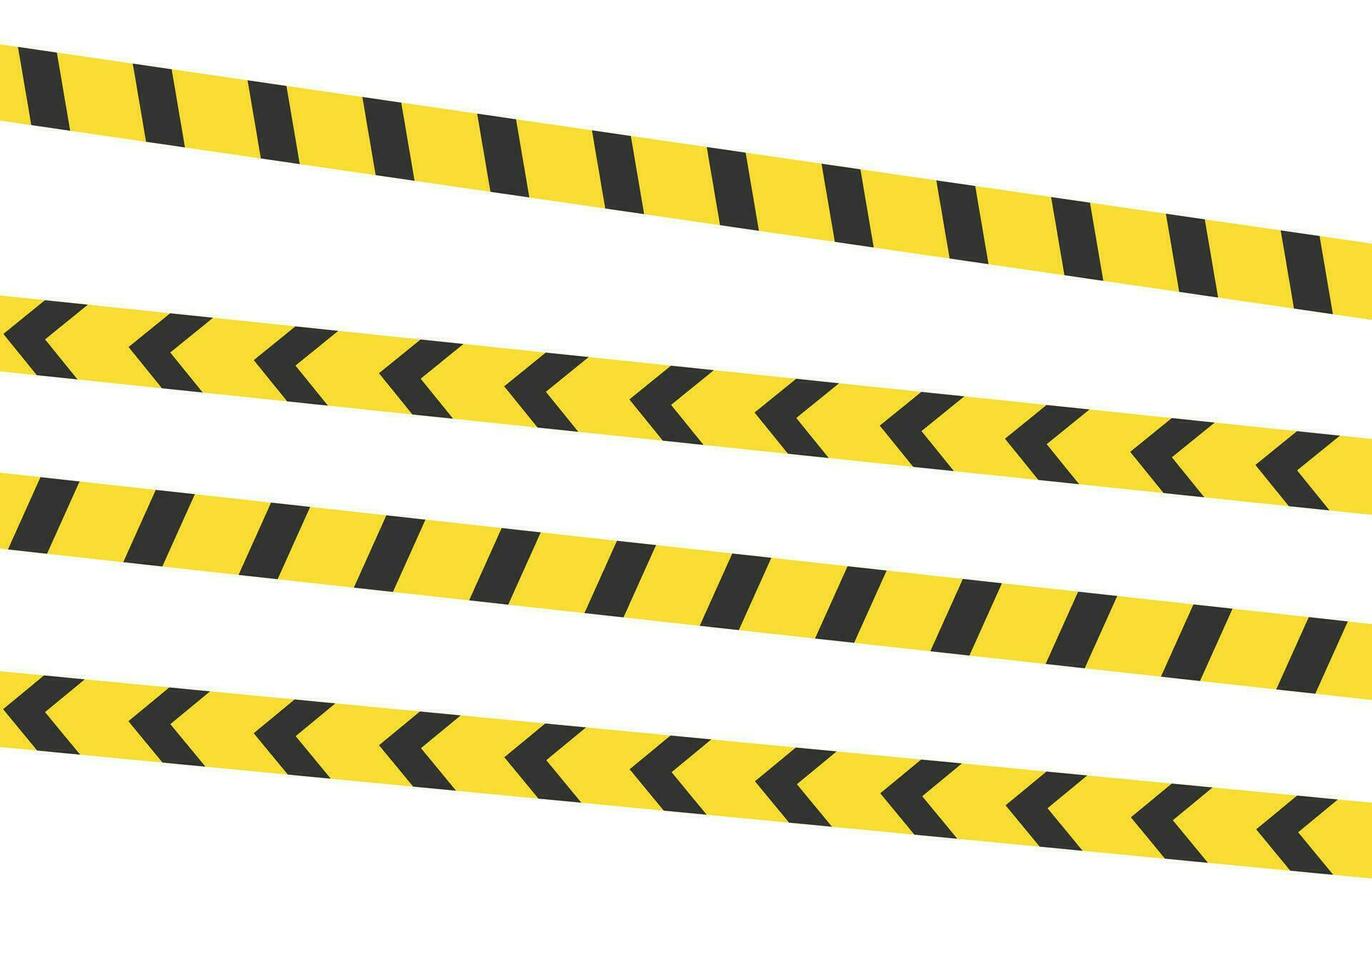 Gelb Vorsicht Achtung Warnung Beachtung Band Zeichen Konstruktion Polizei Band Symbol Vektor Illustration